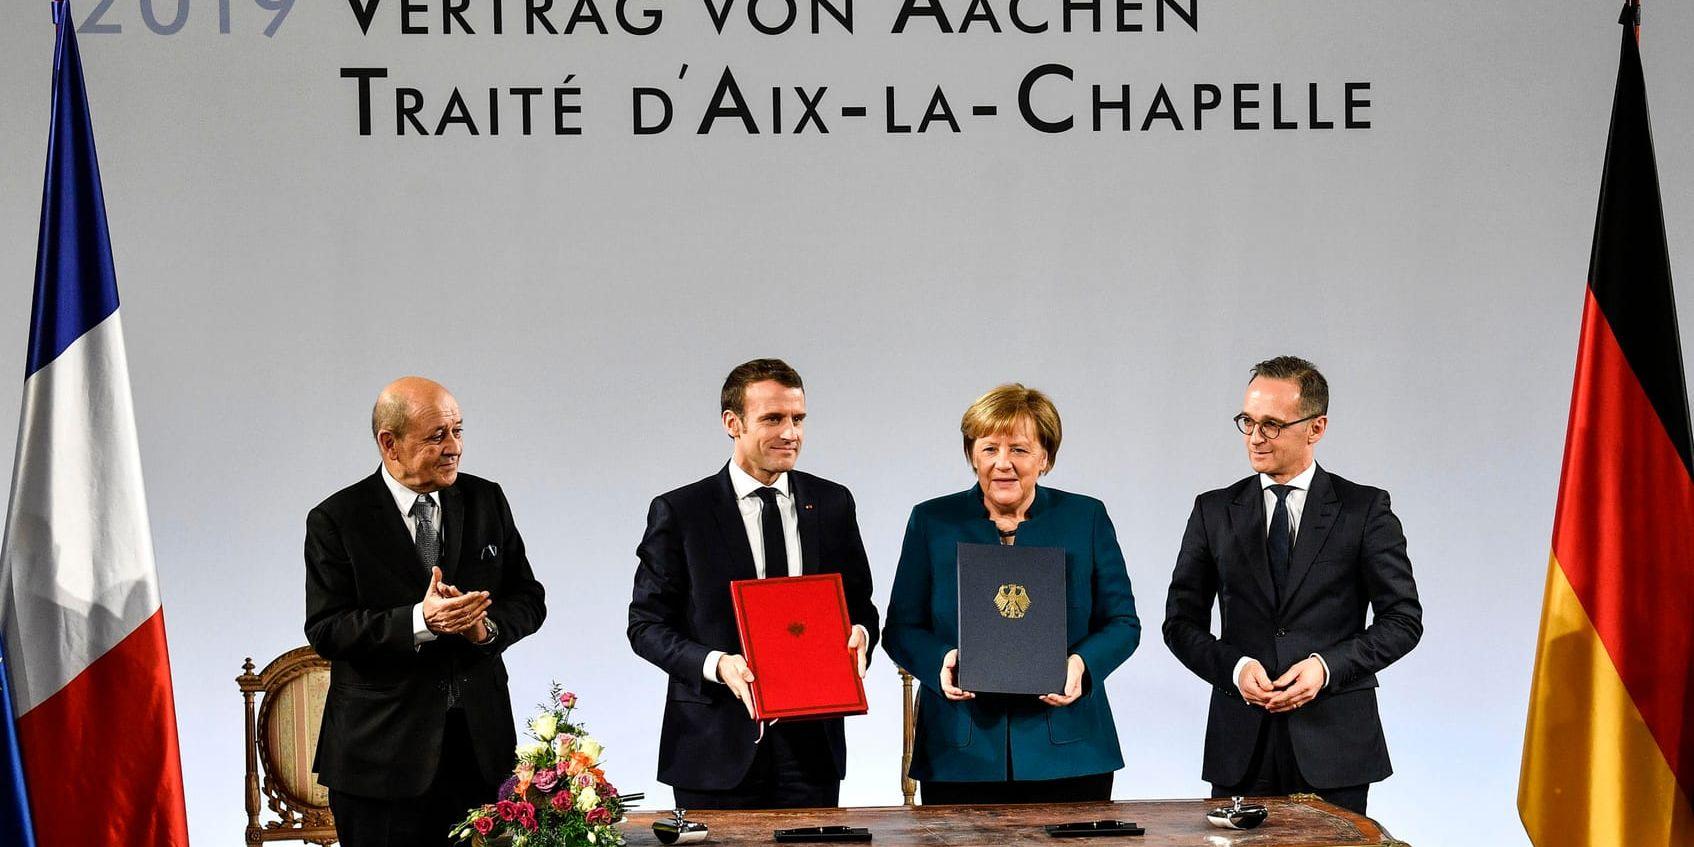 Frankrikes president Emmanuel Macron och Tysklands förbundskansler Angela Merkel, omgivna av sina utrikesministrar Jean-Yves Le Drian och Heiko Maas, efter undertecknandet av Aachen-fördraget.